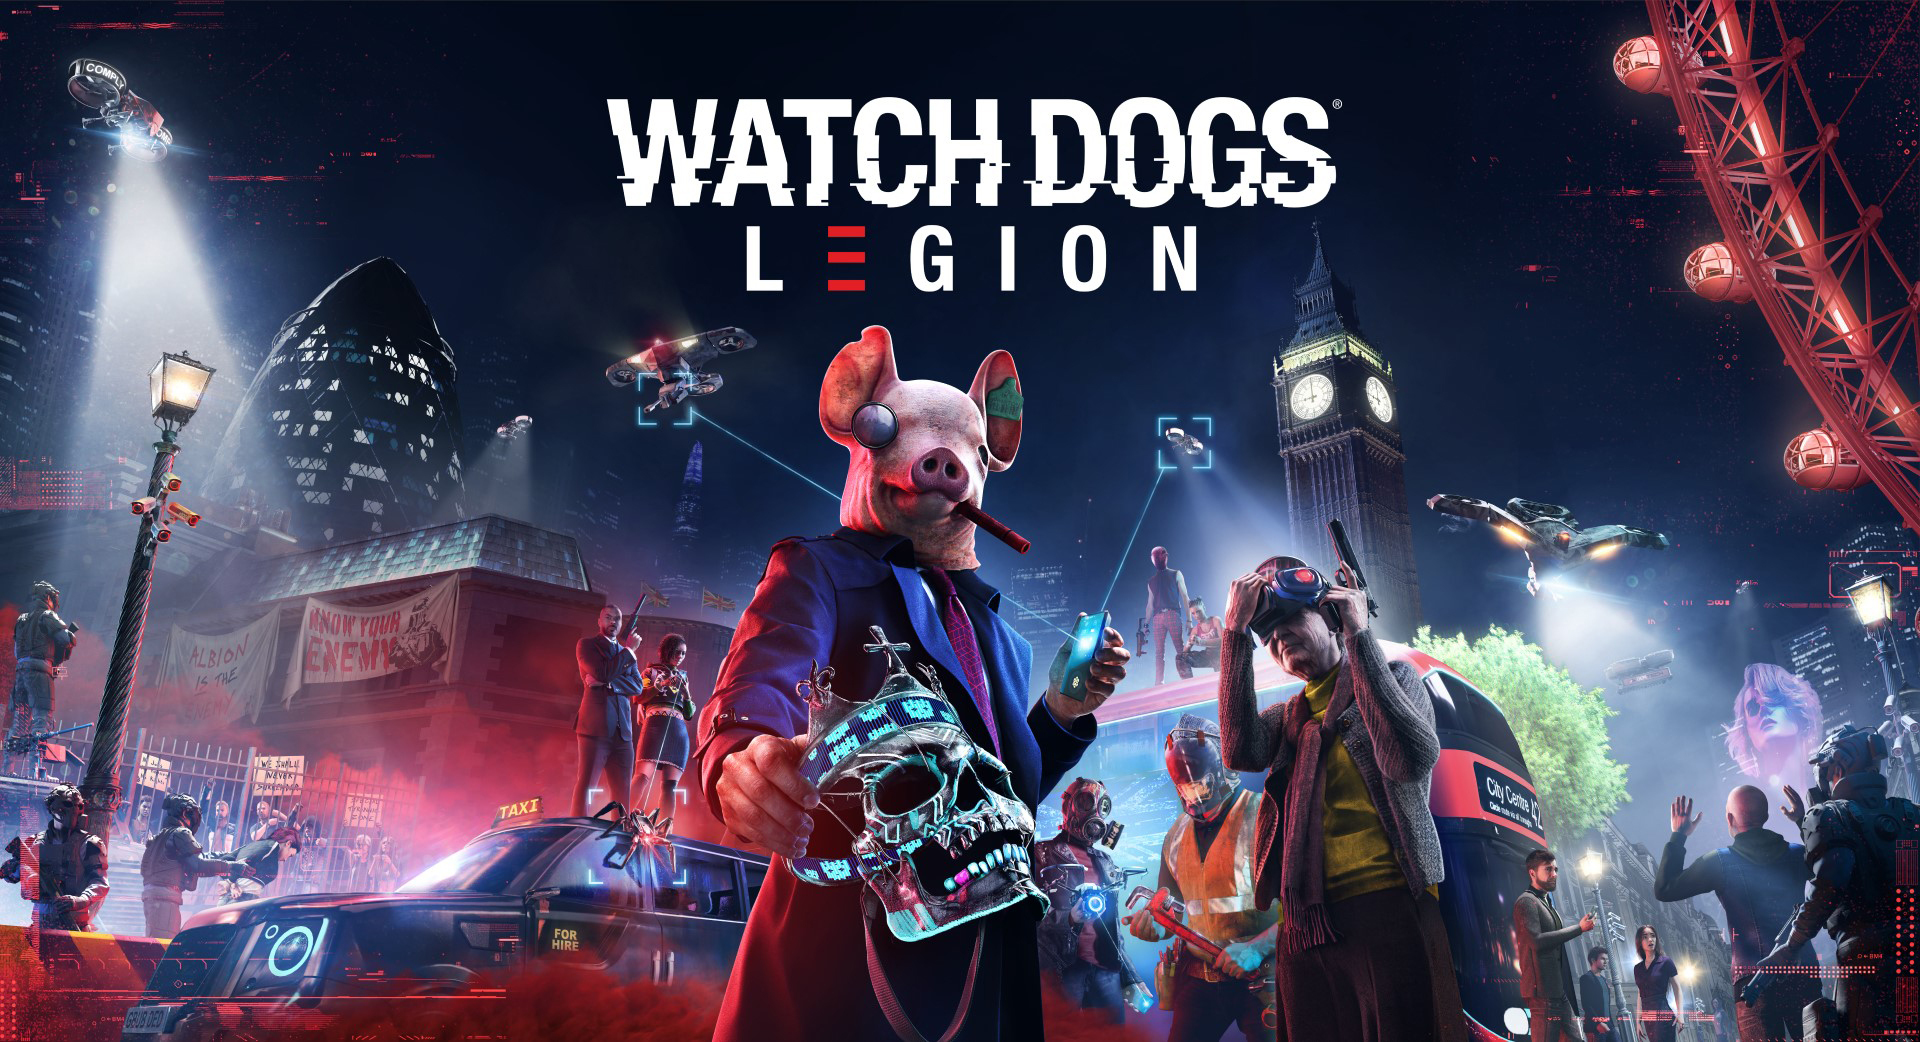 Ubisoft anuncia que Watch Dogs: Legion está disponible ahora en PlayStation 5. La edición física del juego estará disponible el 24 de noviembre.